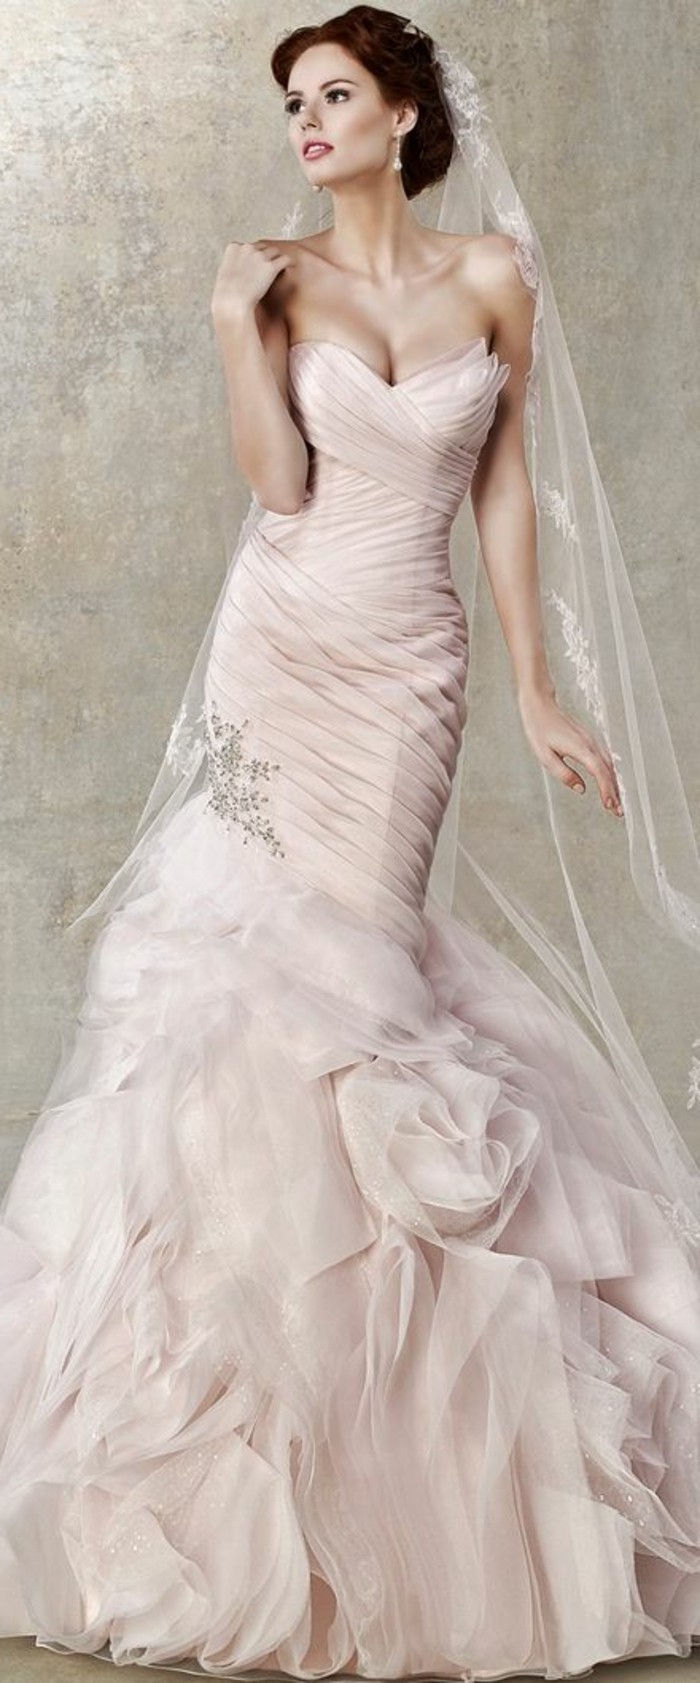 Bröllopsklänning i rosa och lång slöja